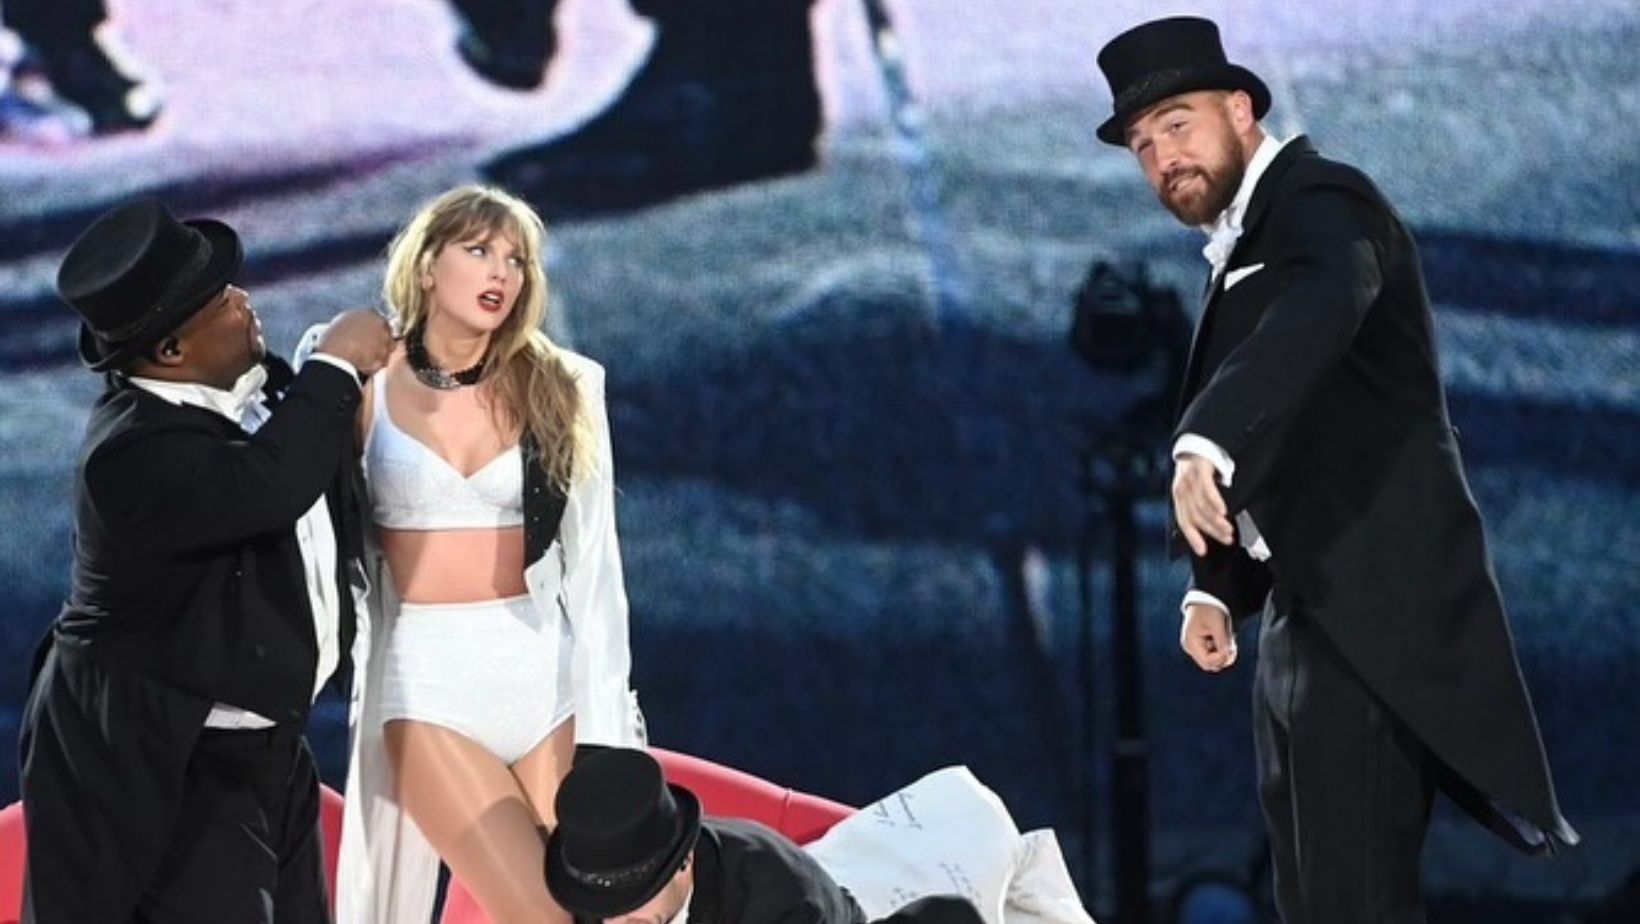 VIDEO: Travis Kelce sorprende al subir al escenario junto a Taylor Swift